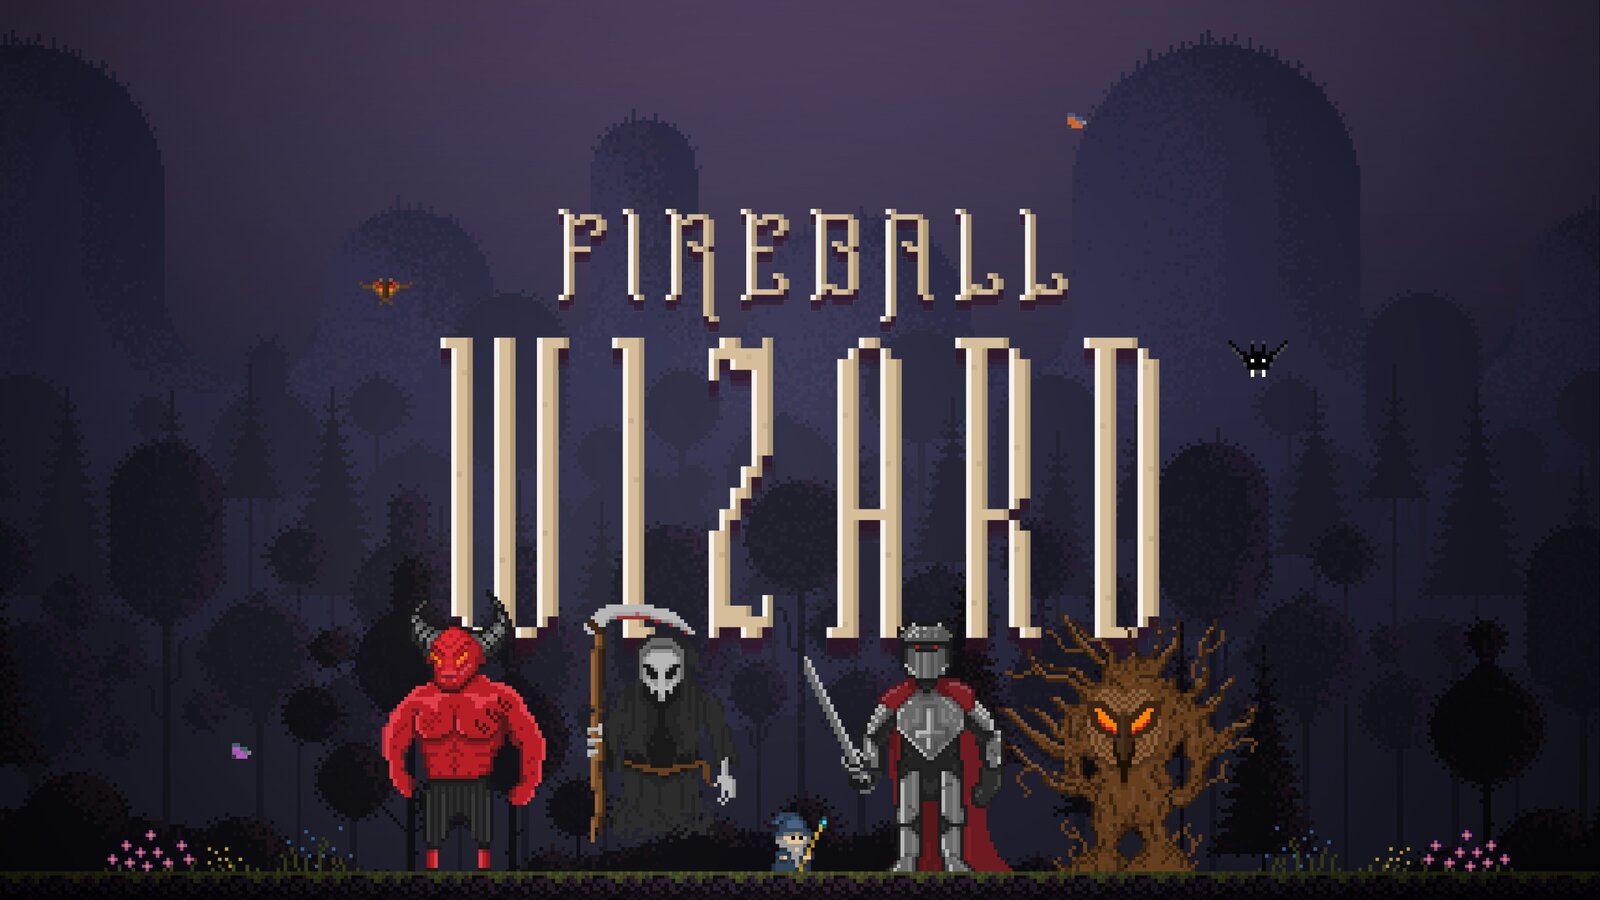 Fireball Wizard